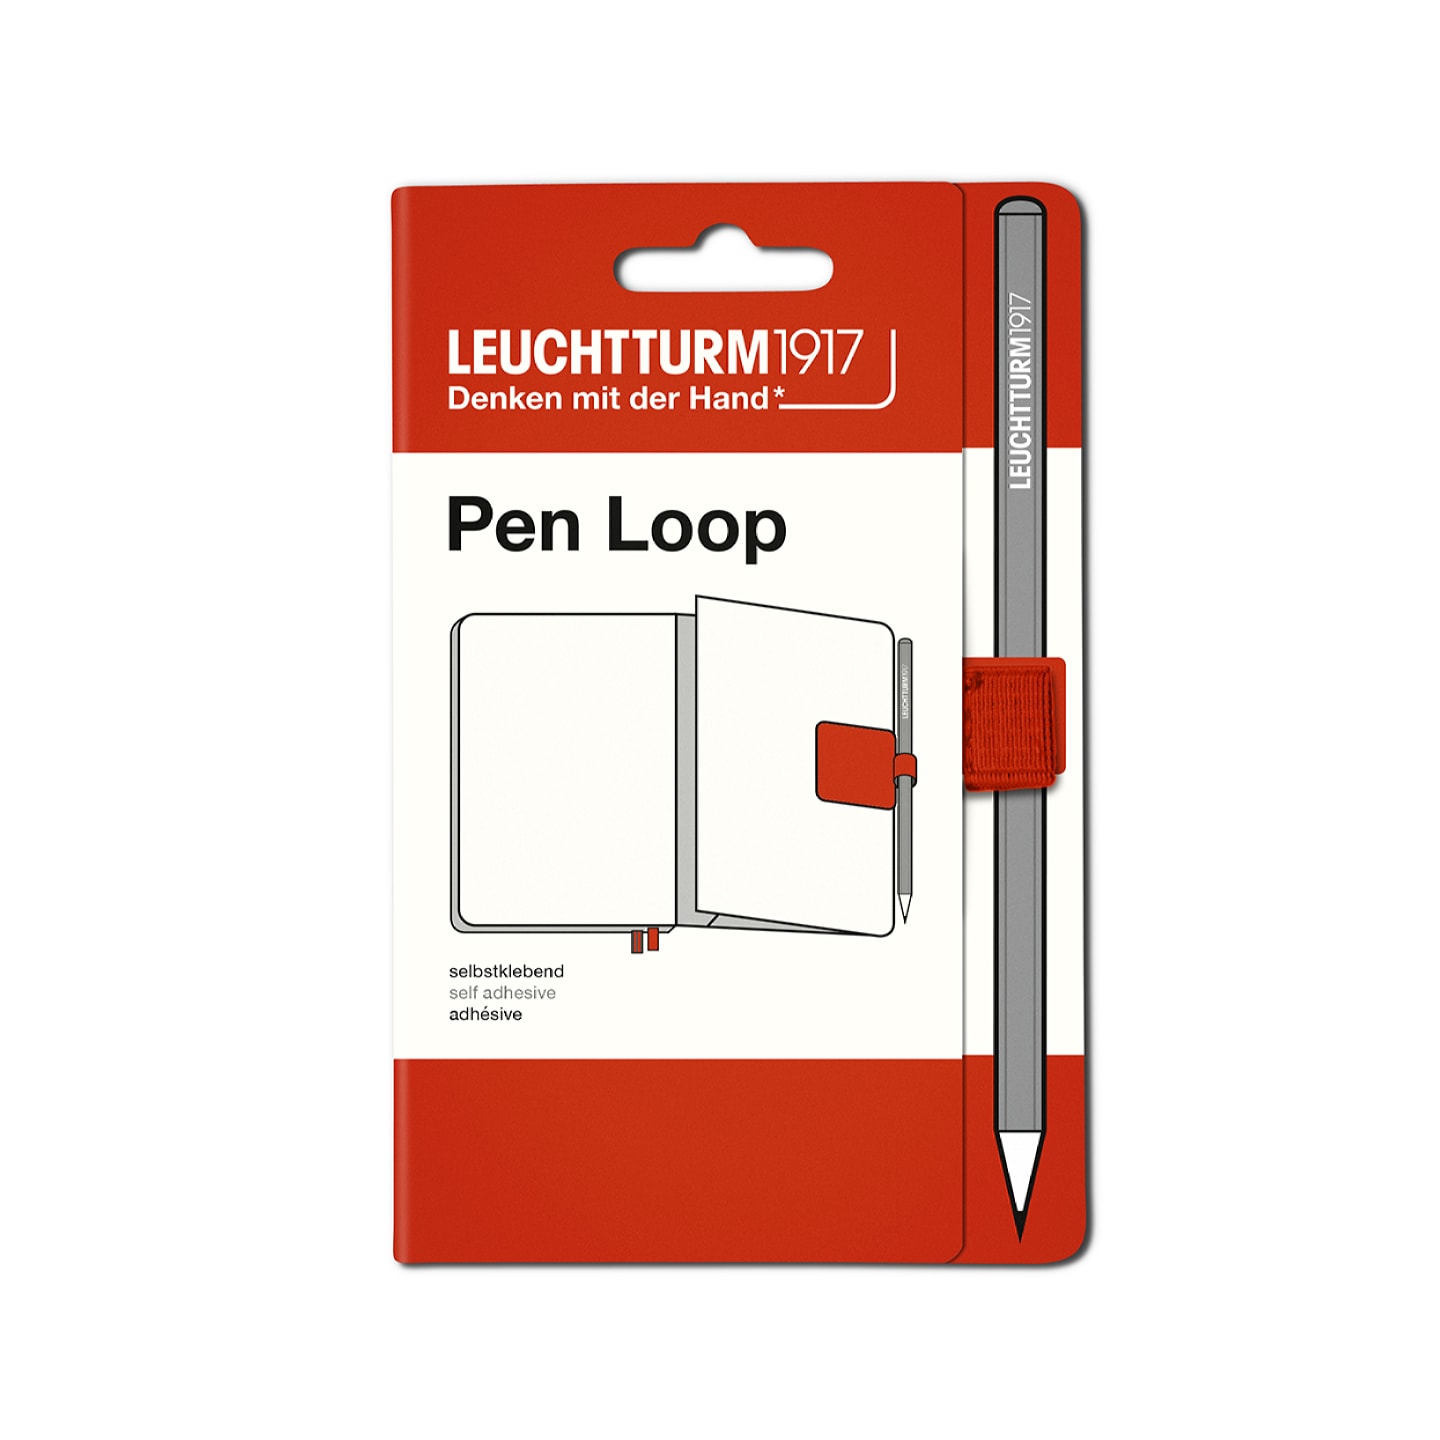 Петля самоклеящаяся Pen Loop для ручек на блокноты Leuchtturm1917 цвет Рыжий лис